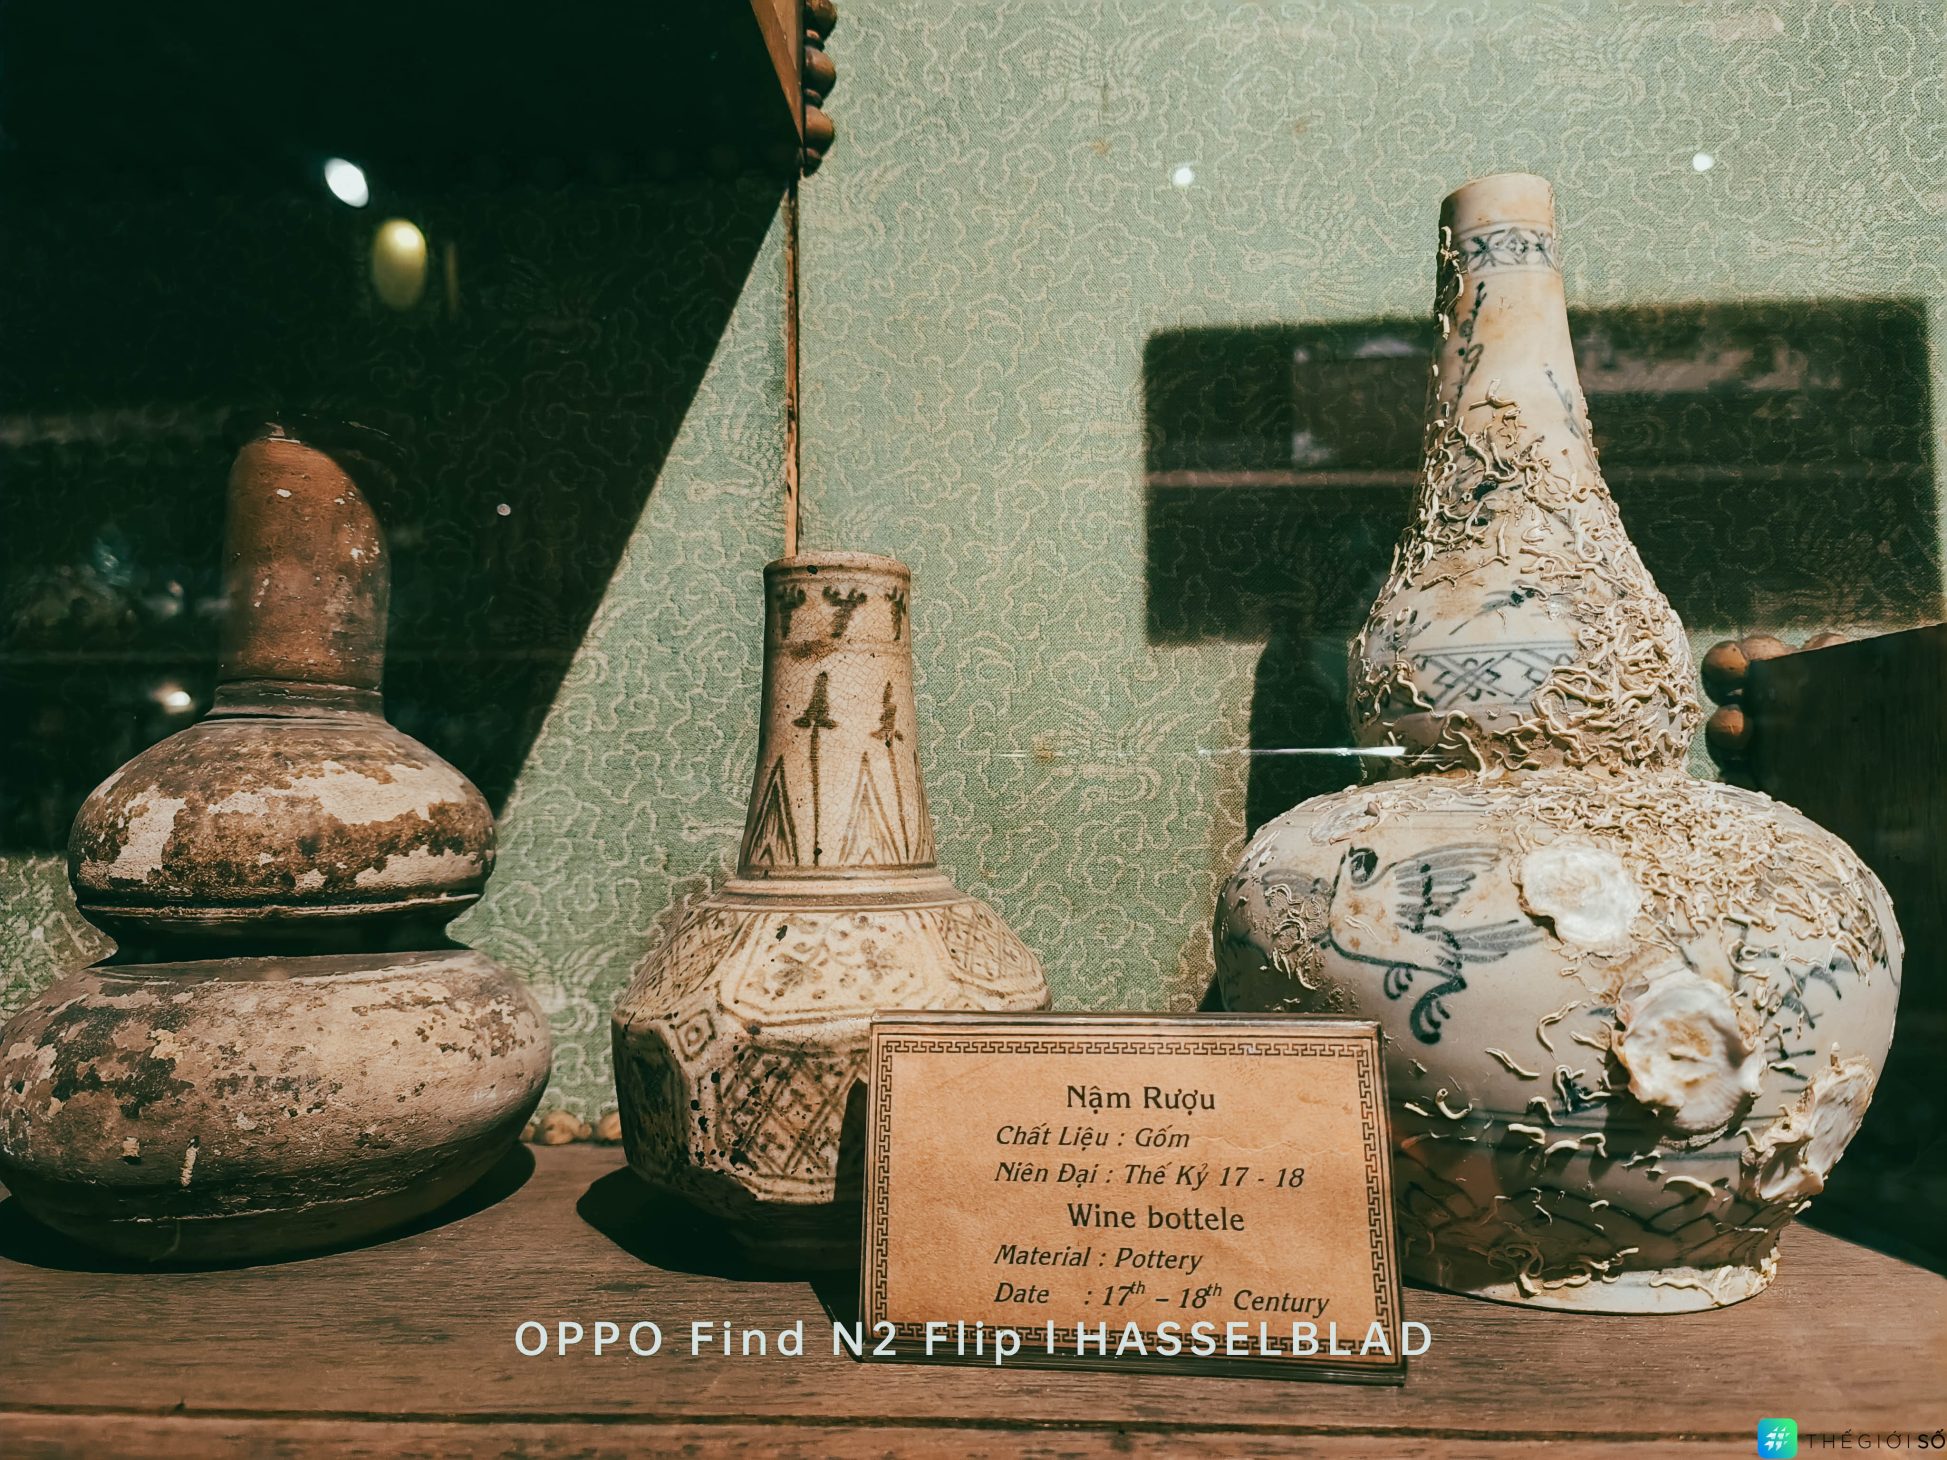 Oppo N2 Flip "choáng ngợp" trước Bảo tàng Y học cổ truyền - một  điểm du lịch độc đáo ít ai biết - Oppo N2 Flip 1 of 1 21